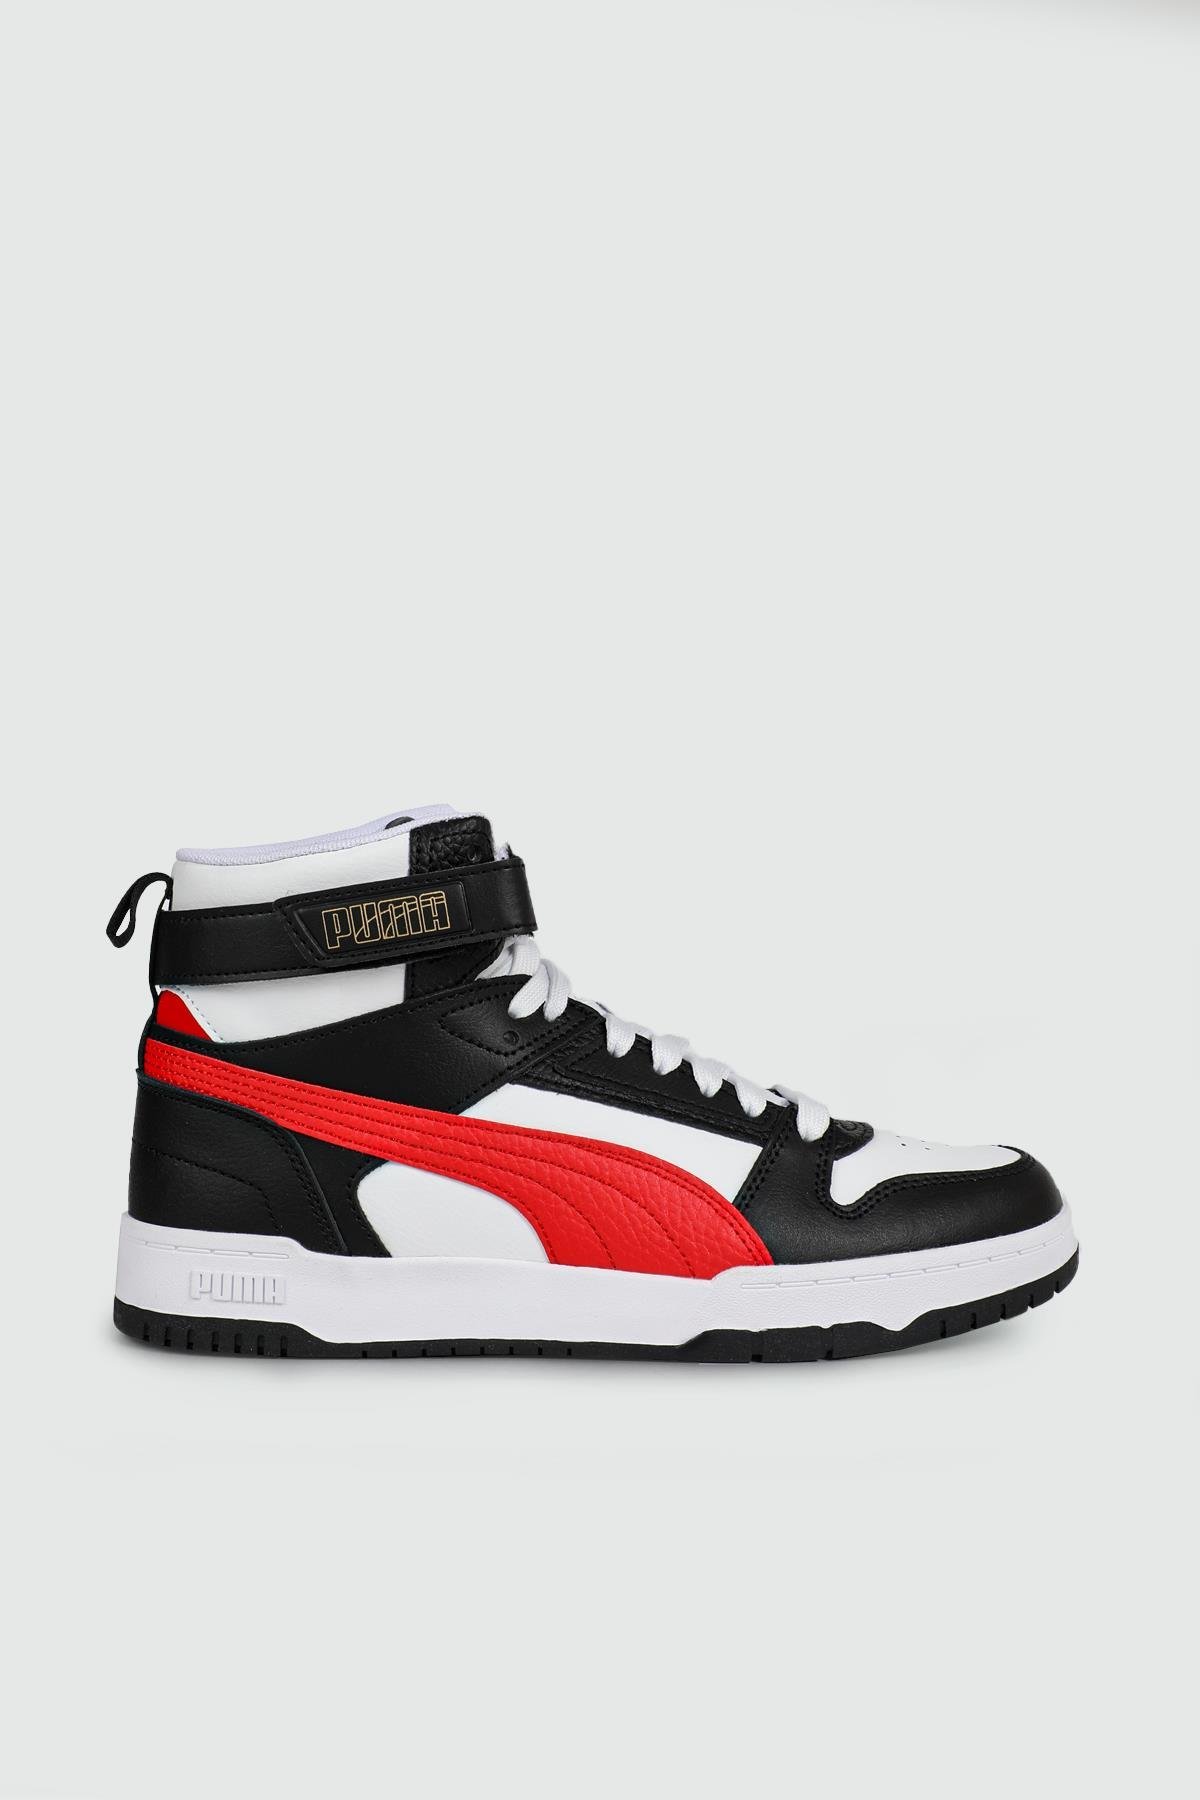 Puma Bilekten Boğazlı Basket Beyaz Siyah Kırmızı Erkek Spor Ayakkabı  385839-05 | Ayakkabı City